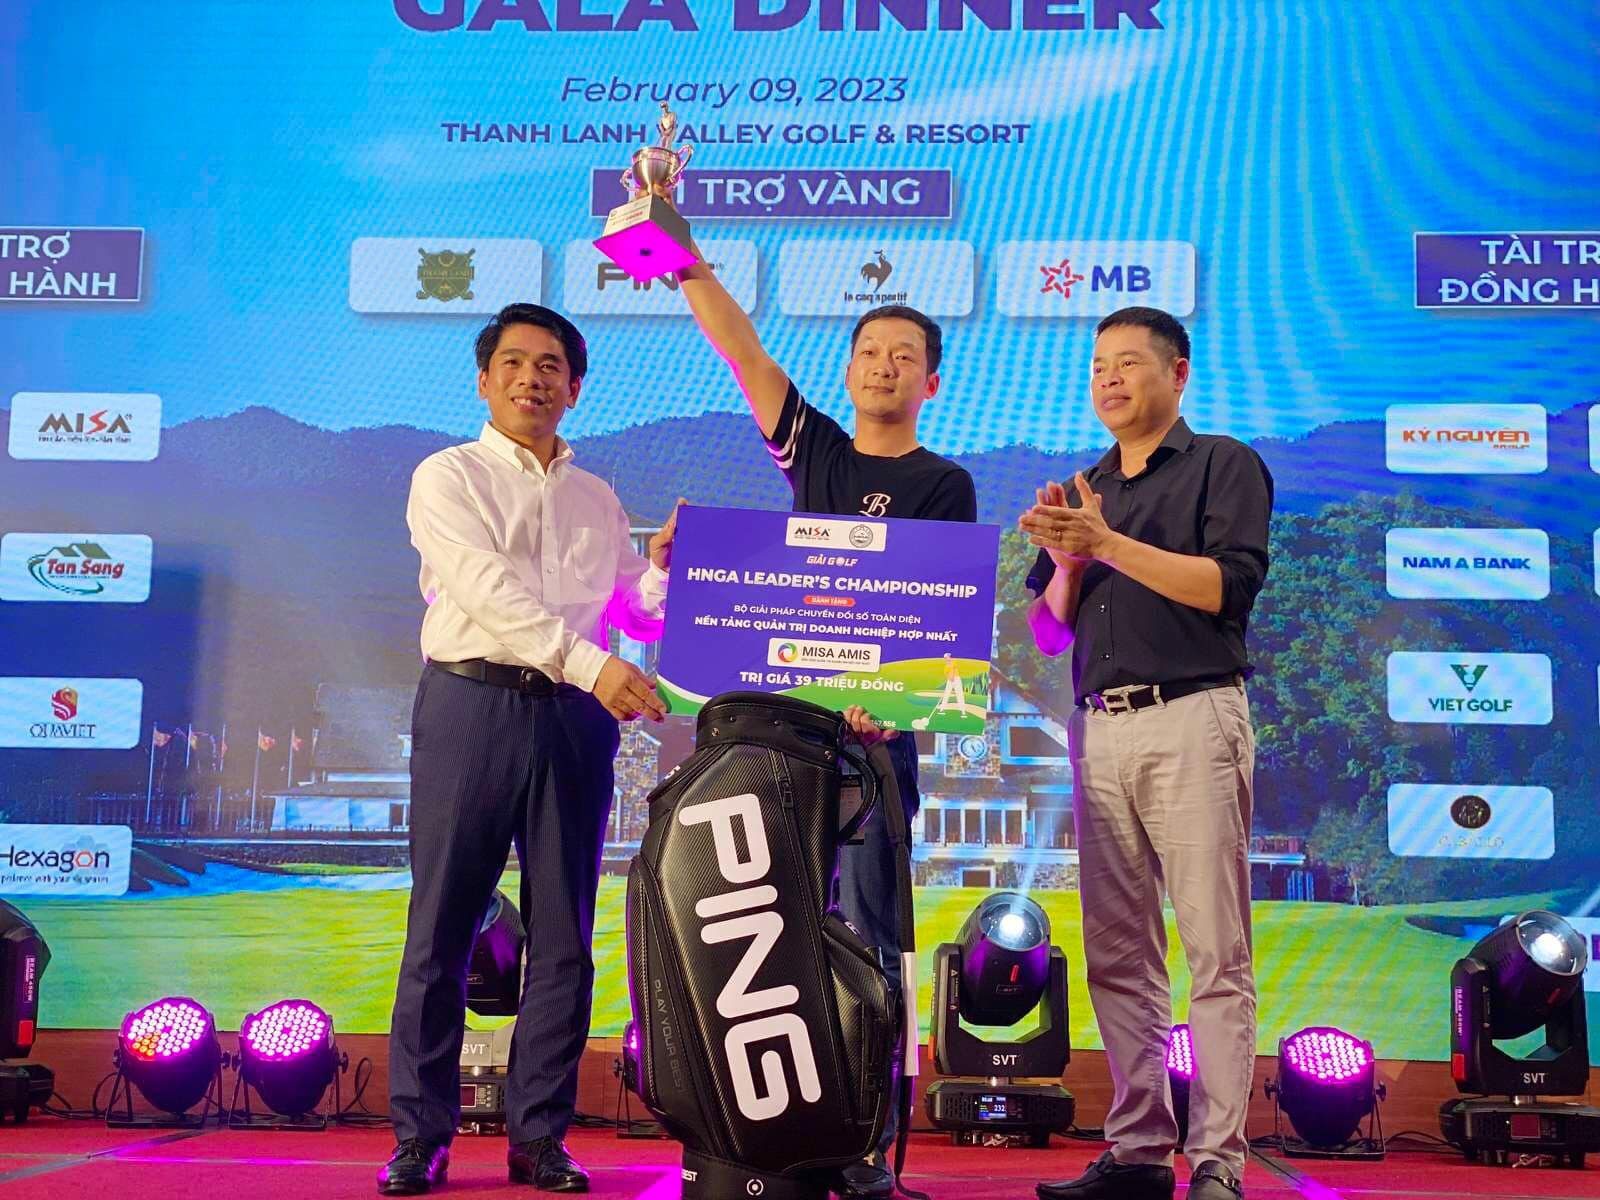 Golfer Âu Văn Sơn vô địch HNGA Leader’s Championship 2023